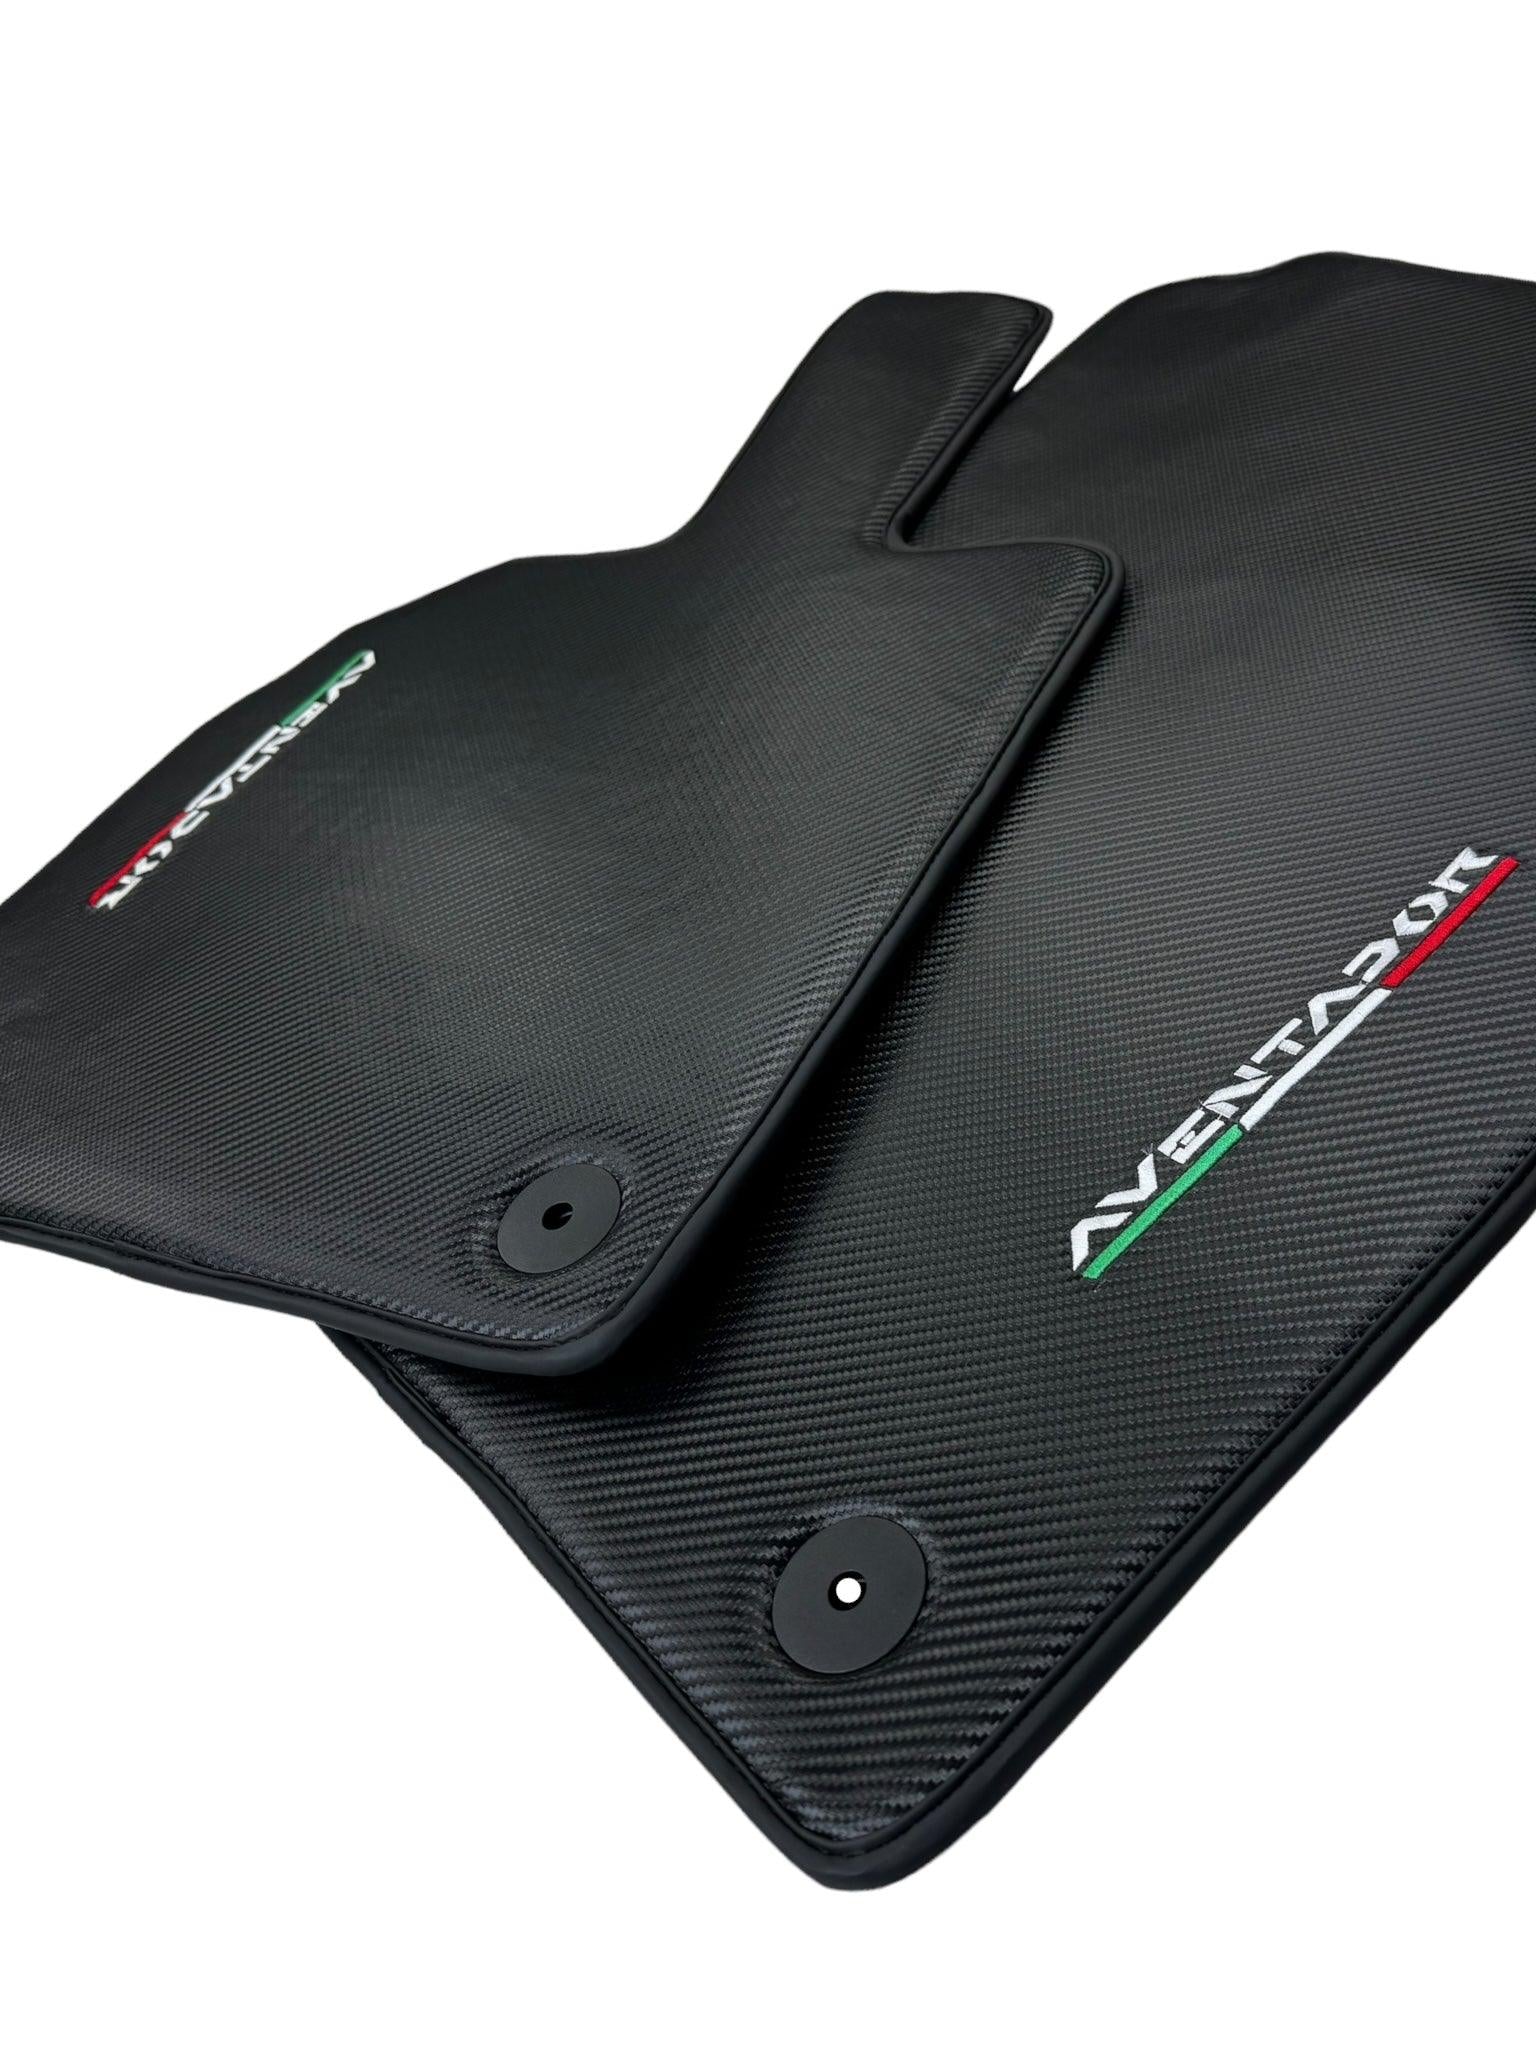 Carbon Fiber Floor Mats for Lamborghini Aventador - AutoWin